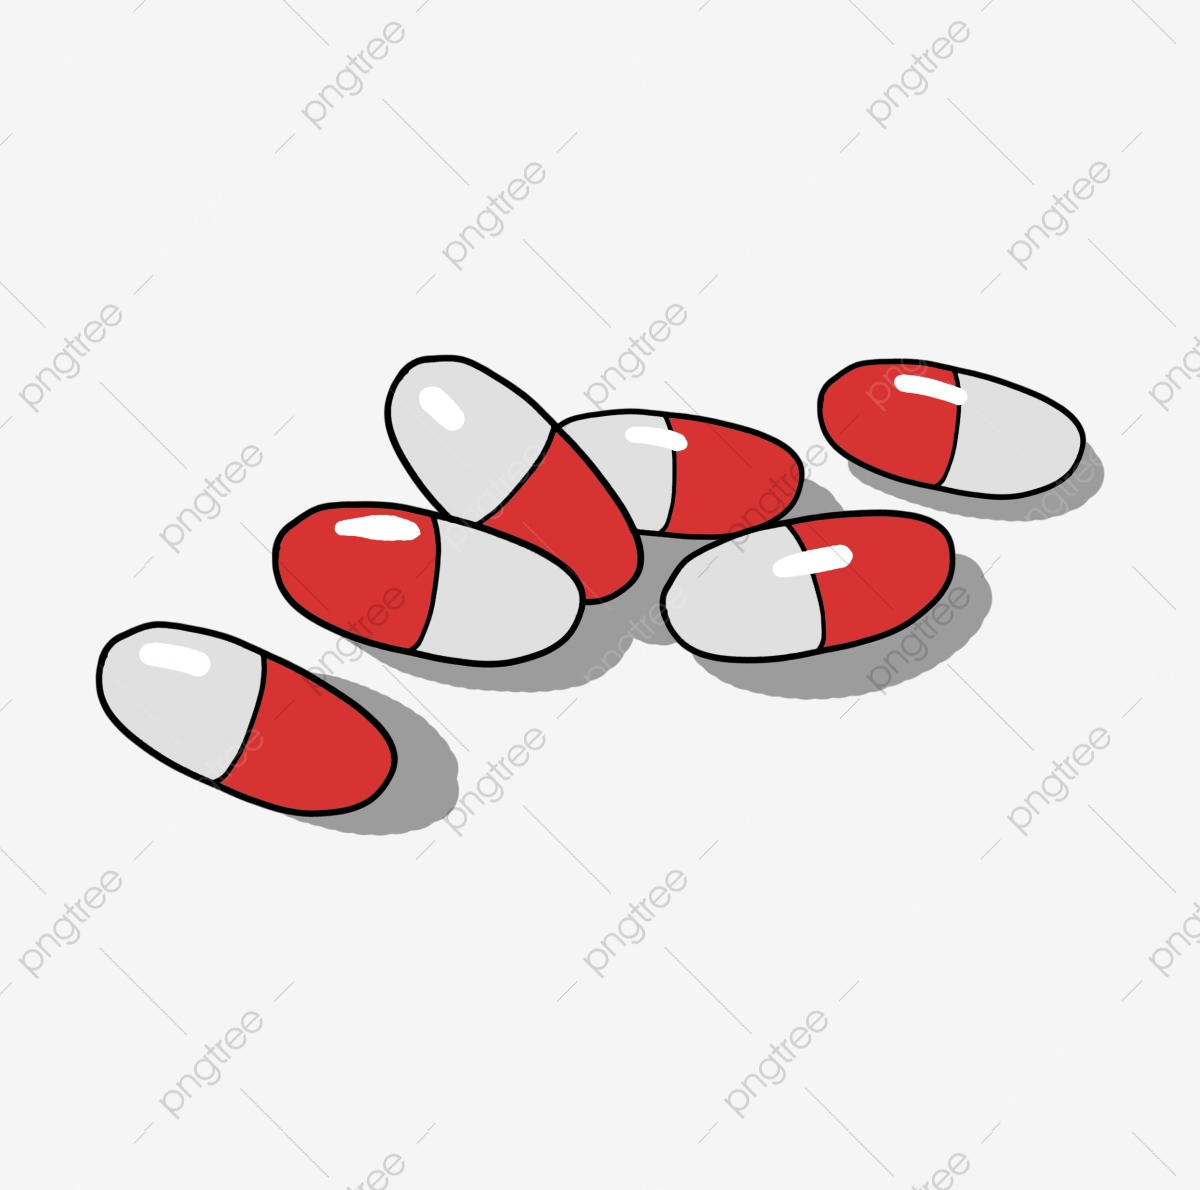 pill clipart medical tablet